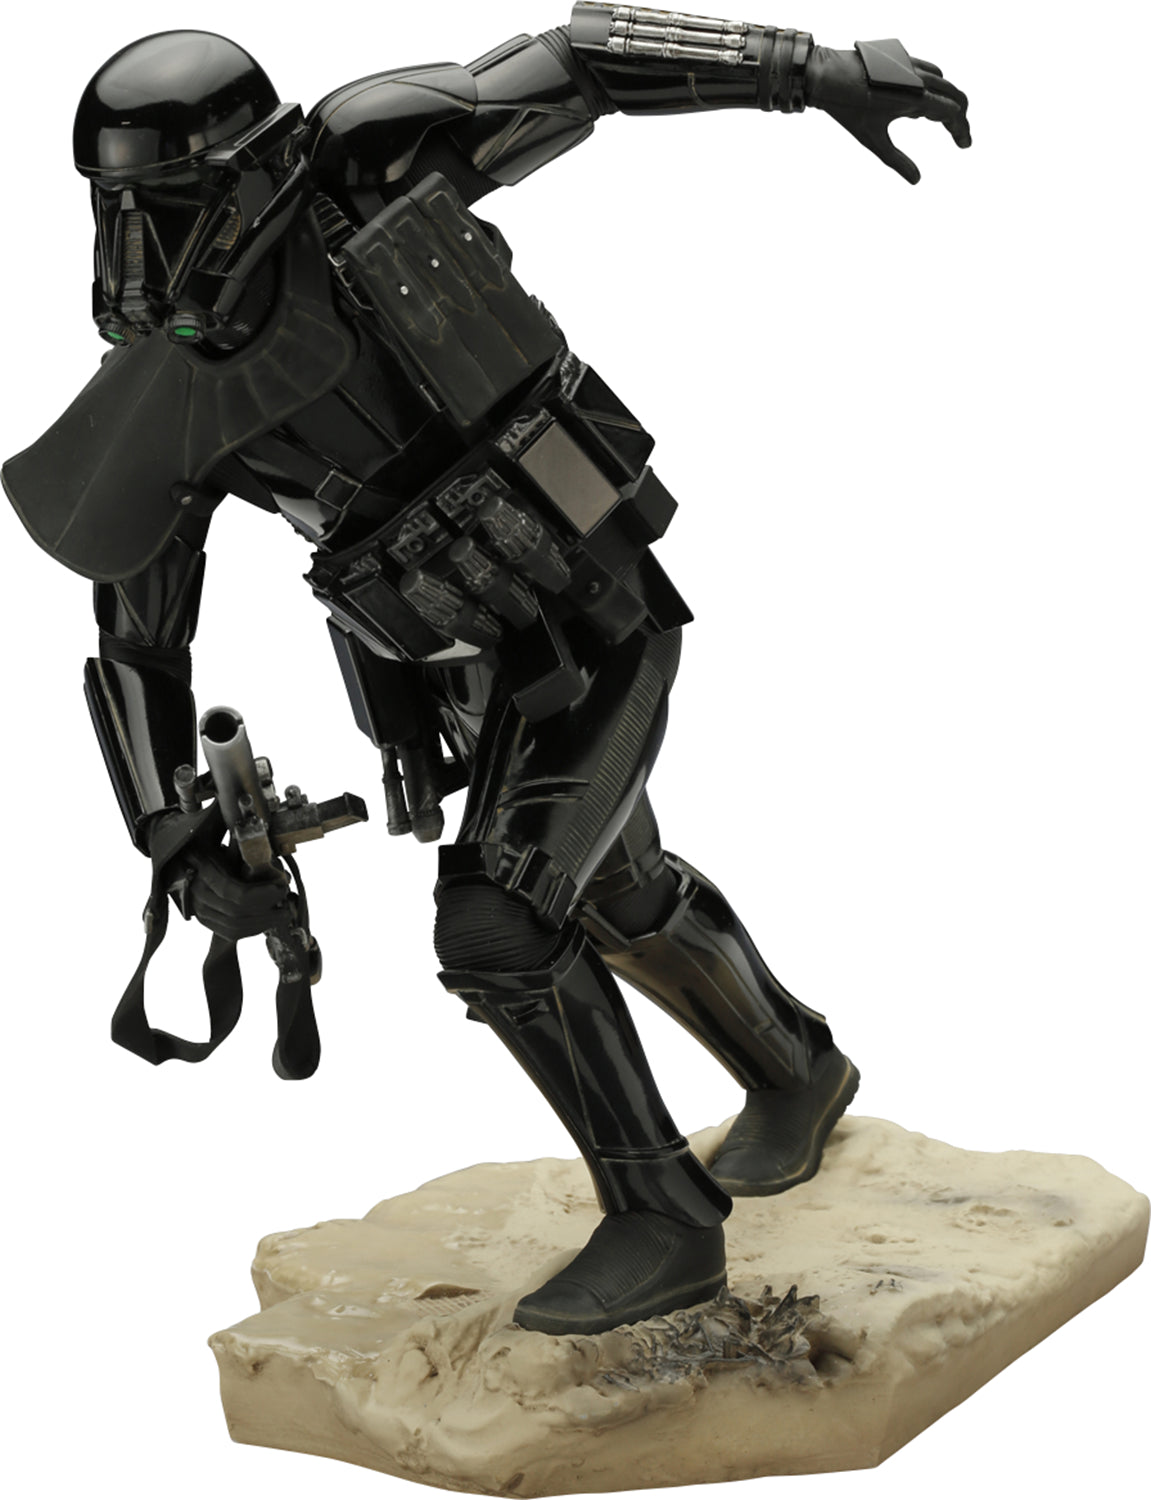 Star Wars Death Trooper ARTFX Statue